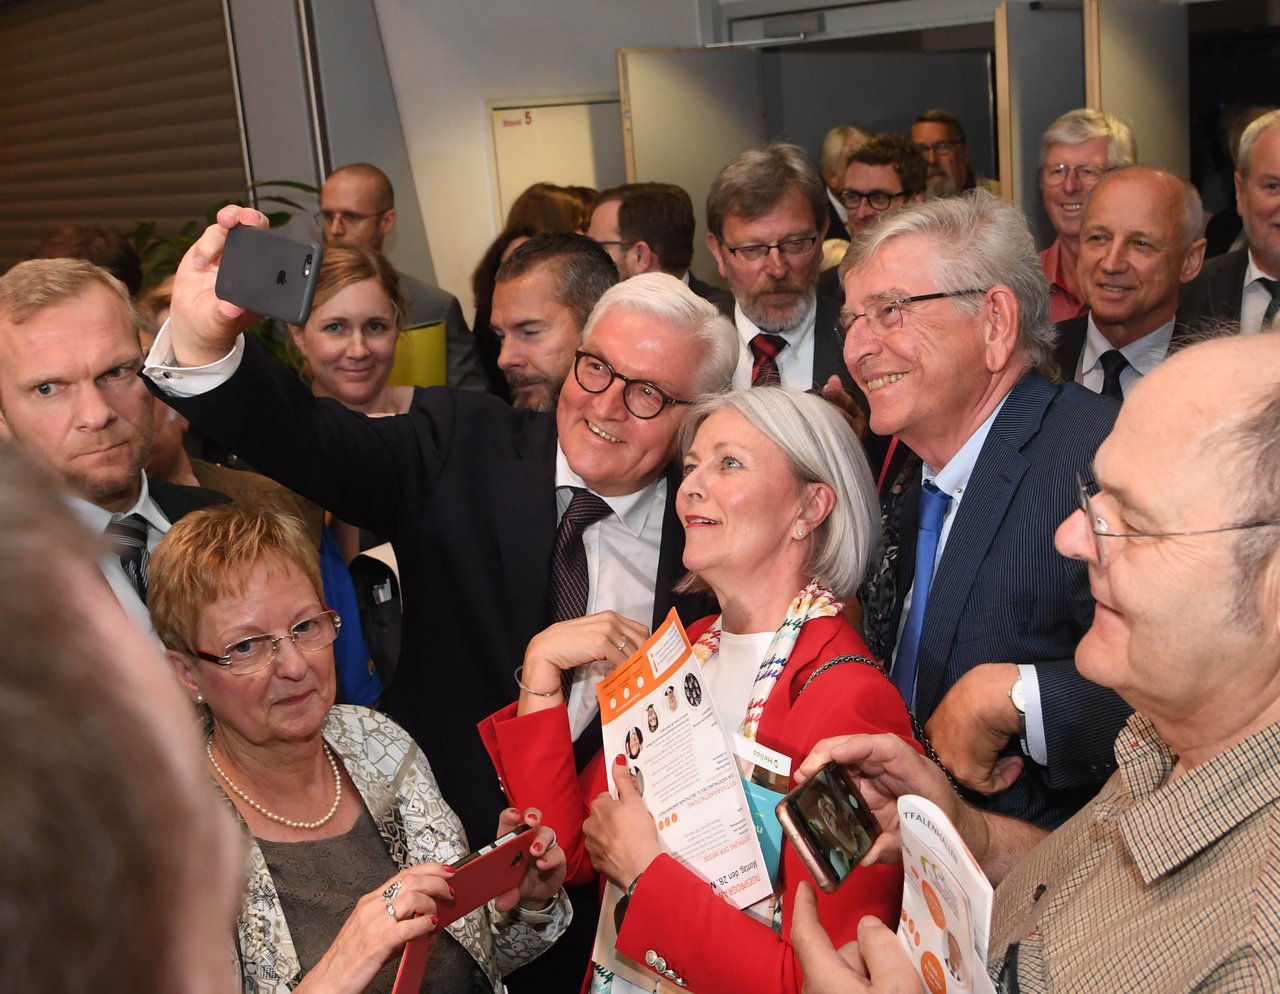 Bundespräsident Steinmeier macht Selfie mit einer Frau in Menschenmenge